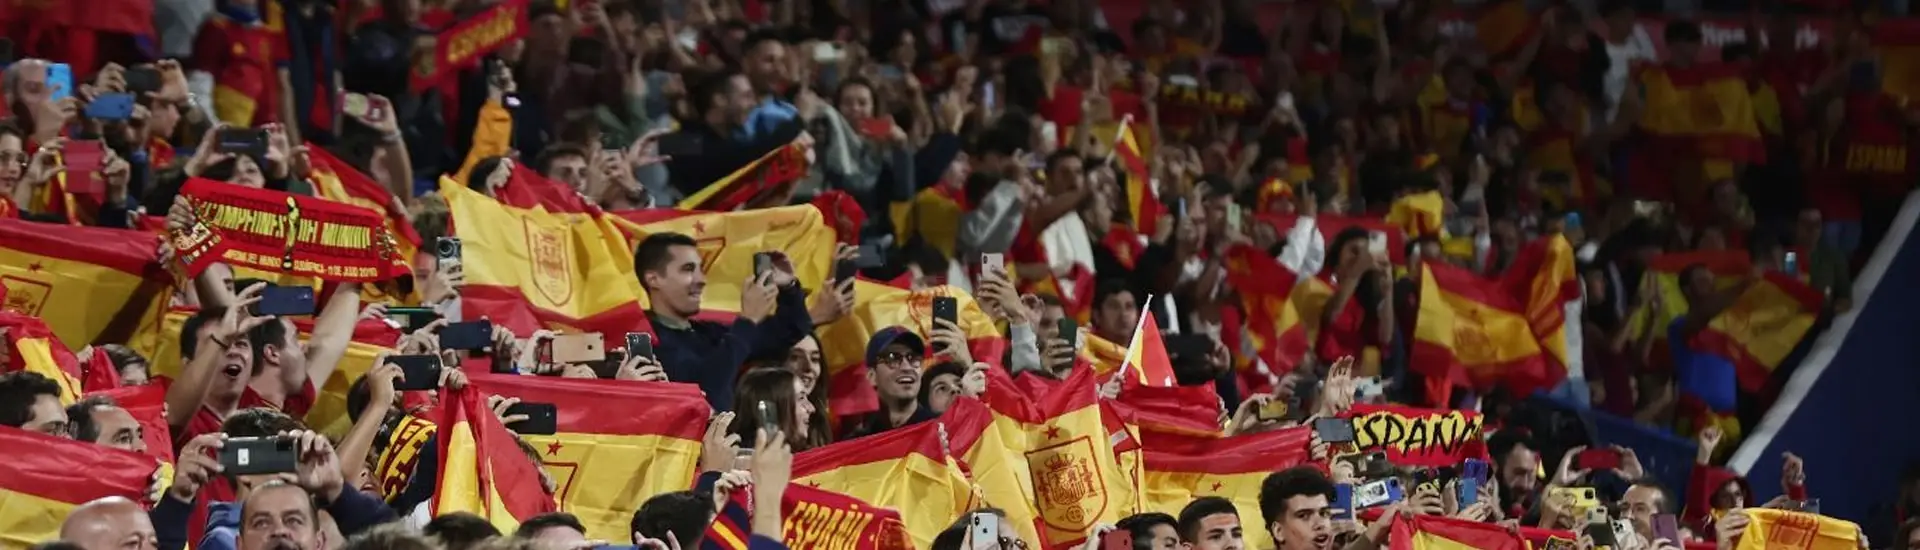 selección española con banderas